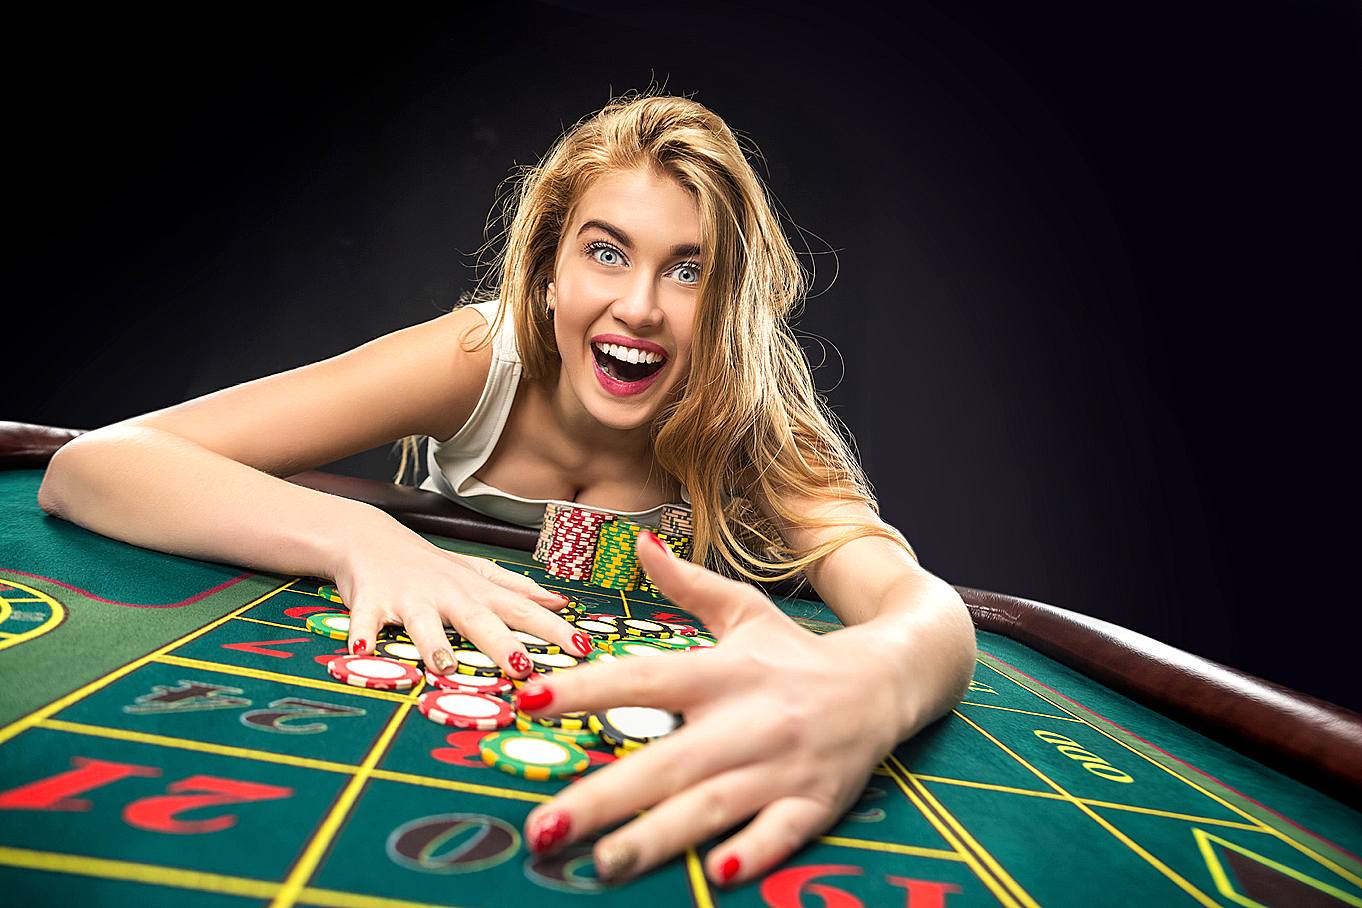 Azart games casino азартные игры самые популярные игровые автоматы netent покердом промокод pokerwin контрольчестности рф